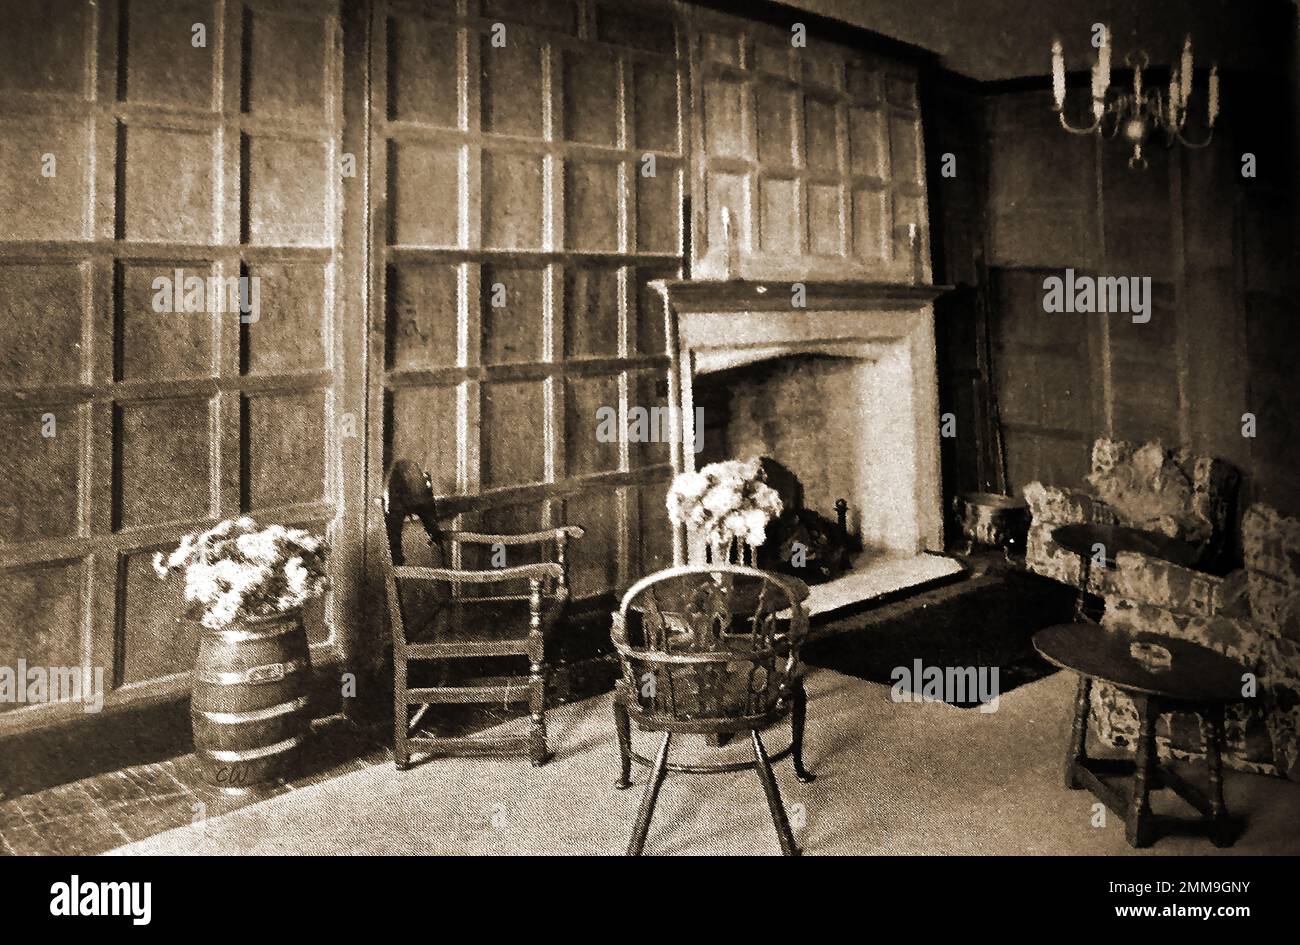 British Pubs Inns & Taverns - Ein ca. 1940 altes Foto des alten Innenraums des White Hart in Chipping Norton mit seinen getäfelten Wänden. Die Fassade der Holzrahmenstruktur aus dem 16. Jahrhundert wurde 1725 (datiert auf Regenwasserköpfe) in der Neuzeit restauriert und umgestaltet Stockfoto